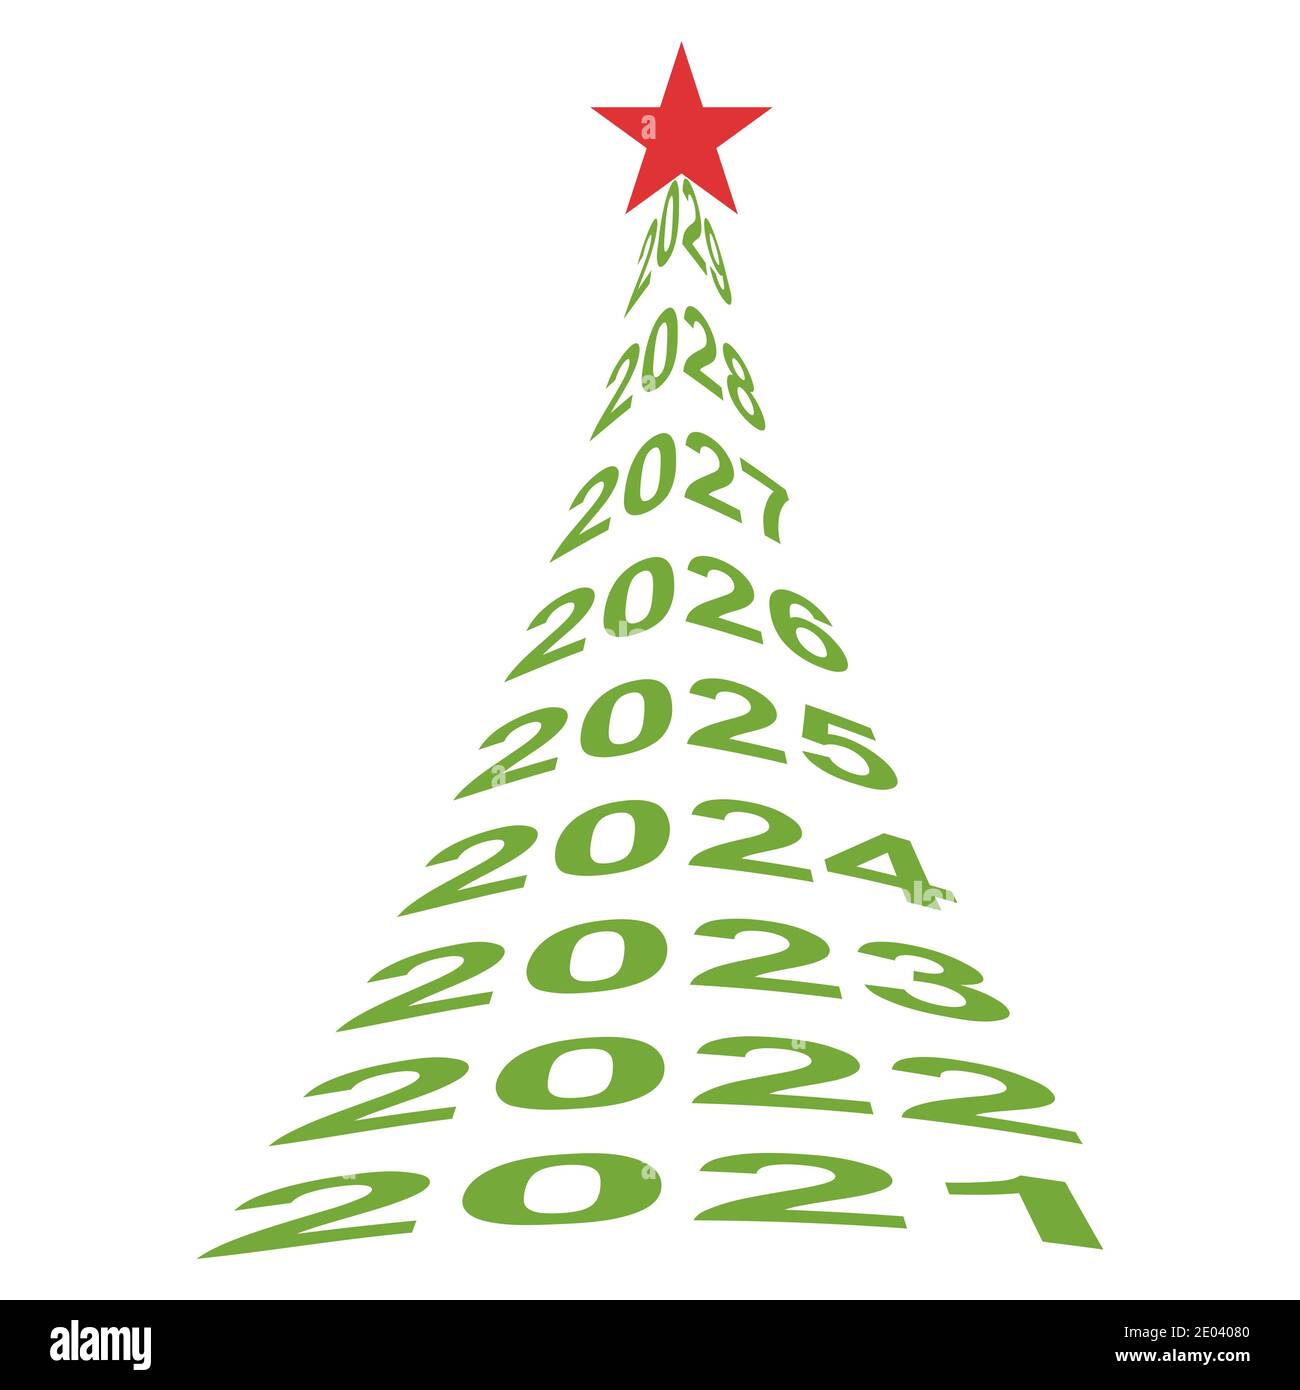 Neujahr Baumnummern 2021, Vektor Weihnachtsbaum Symbol für neues Leben, Wohlbefinden und eine schöne Zukunft Stock Vektor